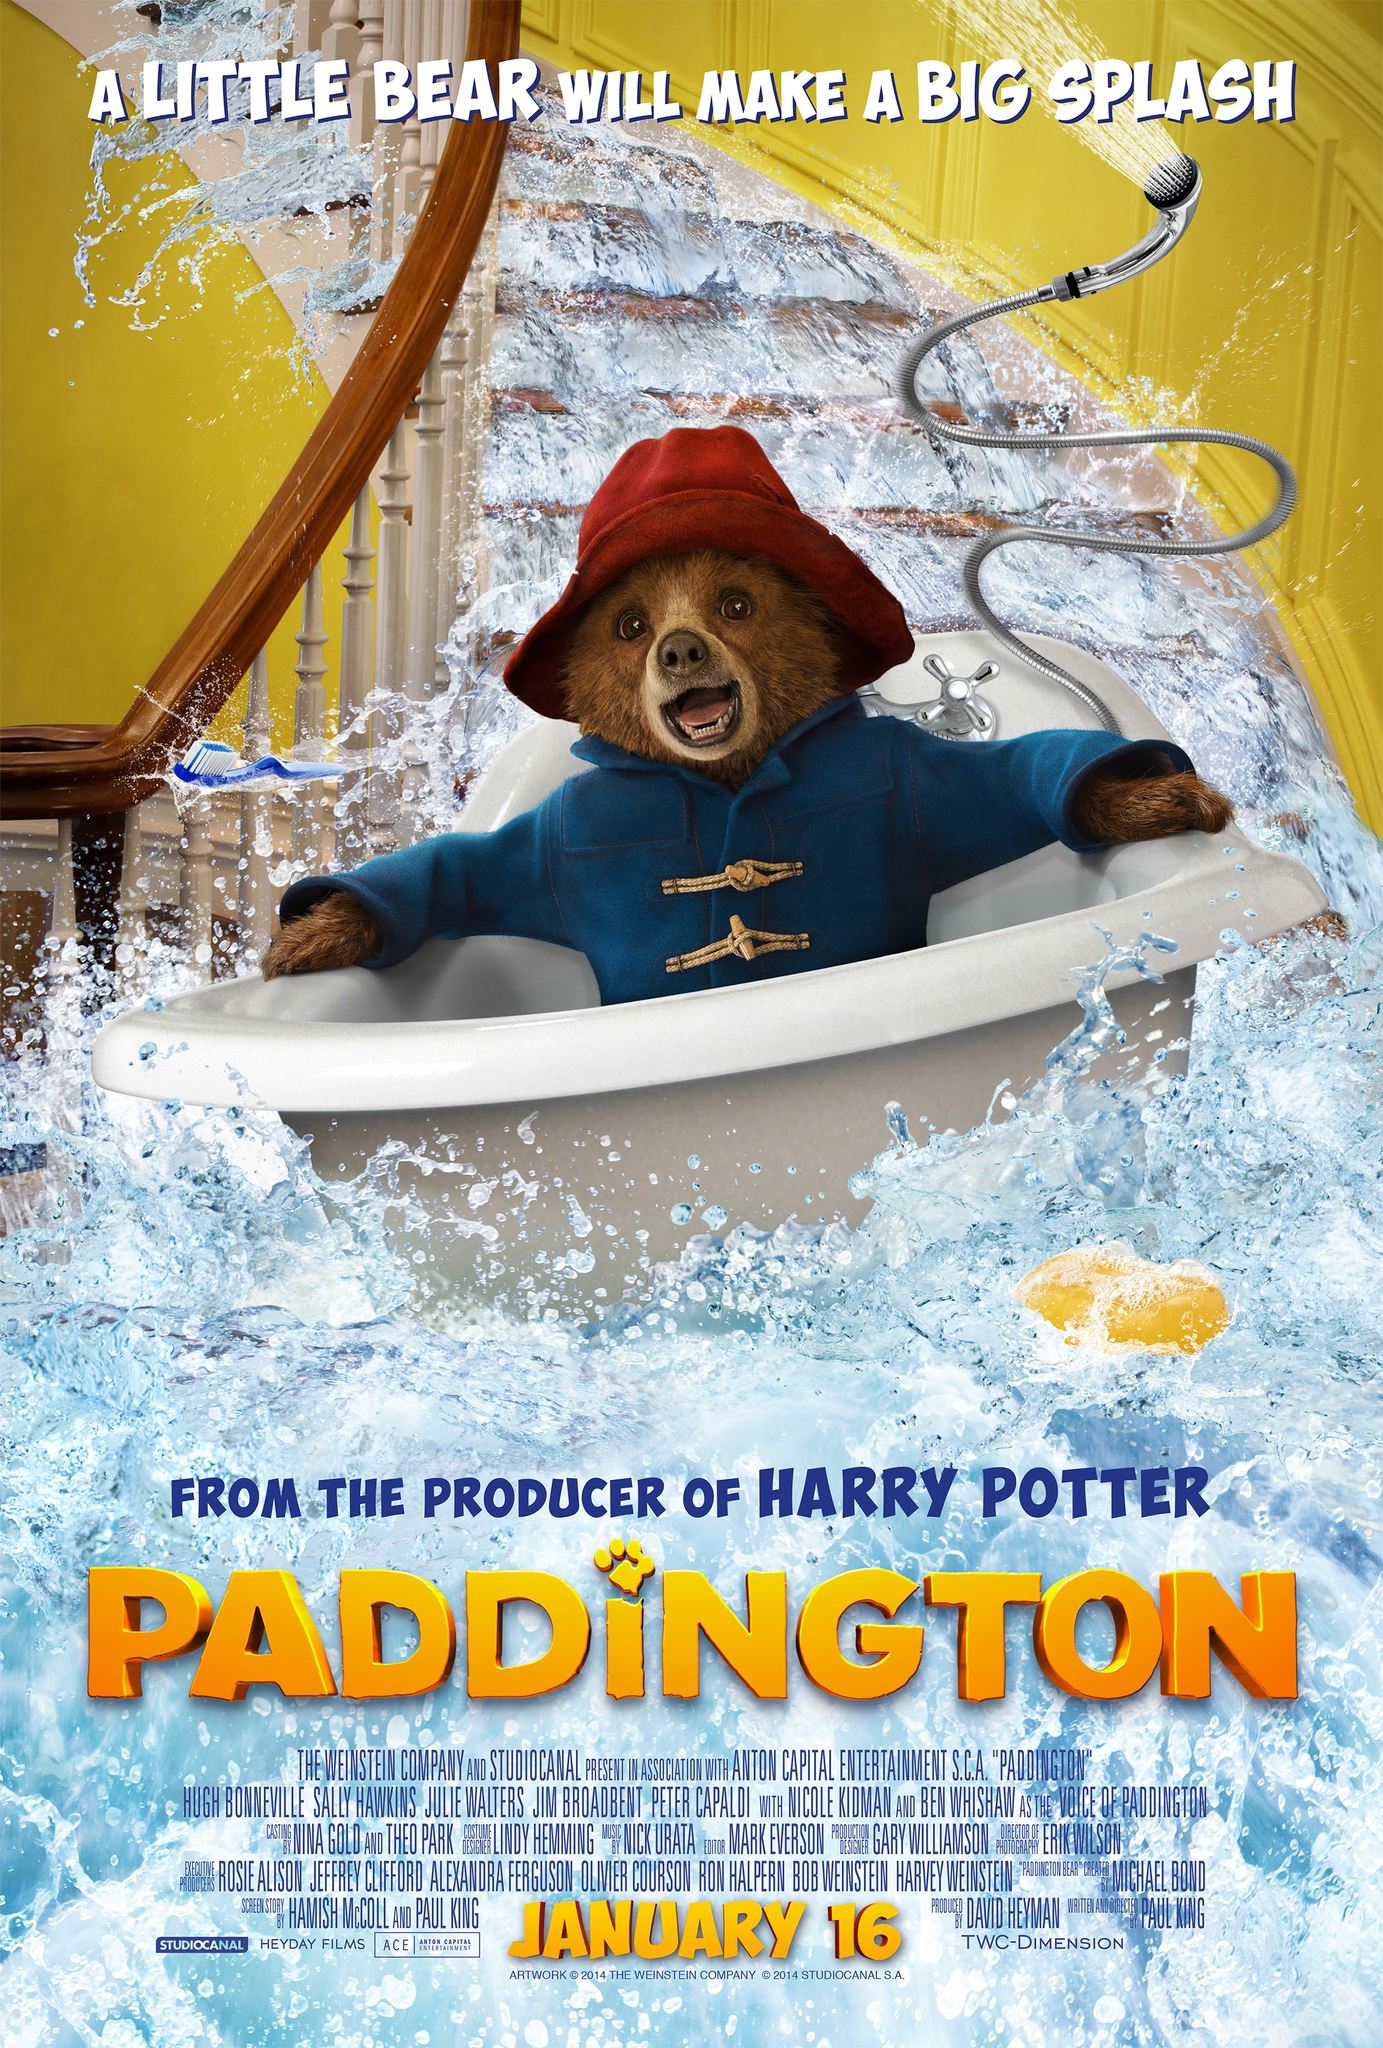 Best Christmas animated movies - Paddington